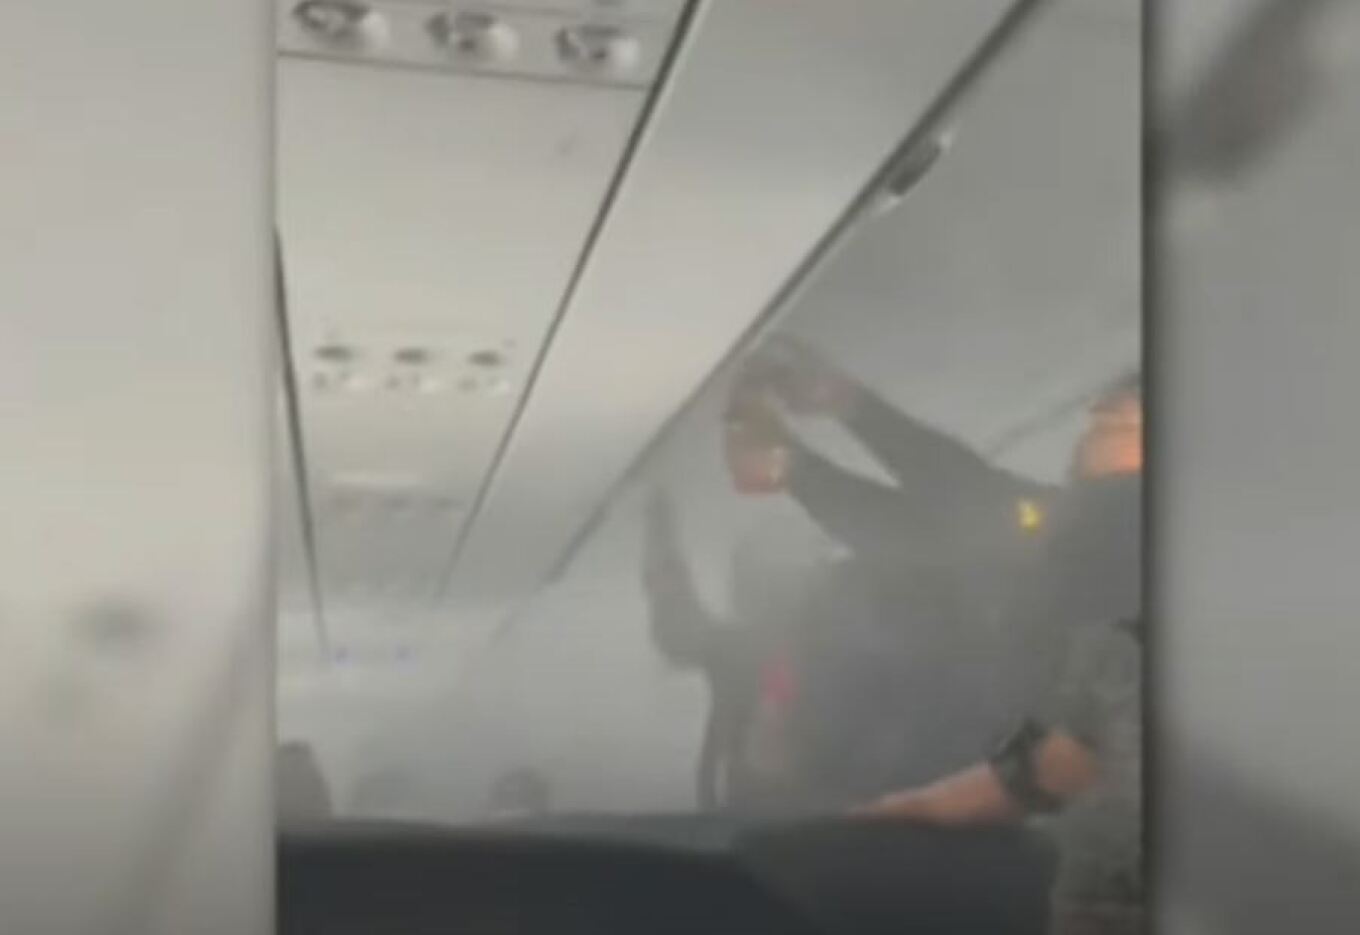 ΗΠΑ: Φωτιά σε αποσκευή επιβάτη αεροσκάφους